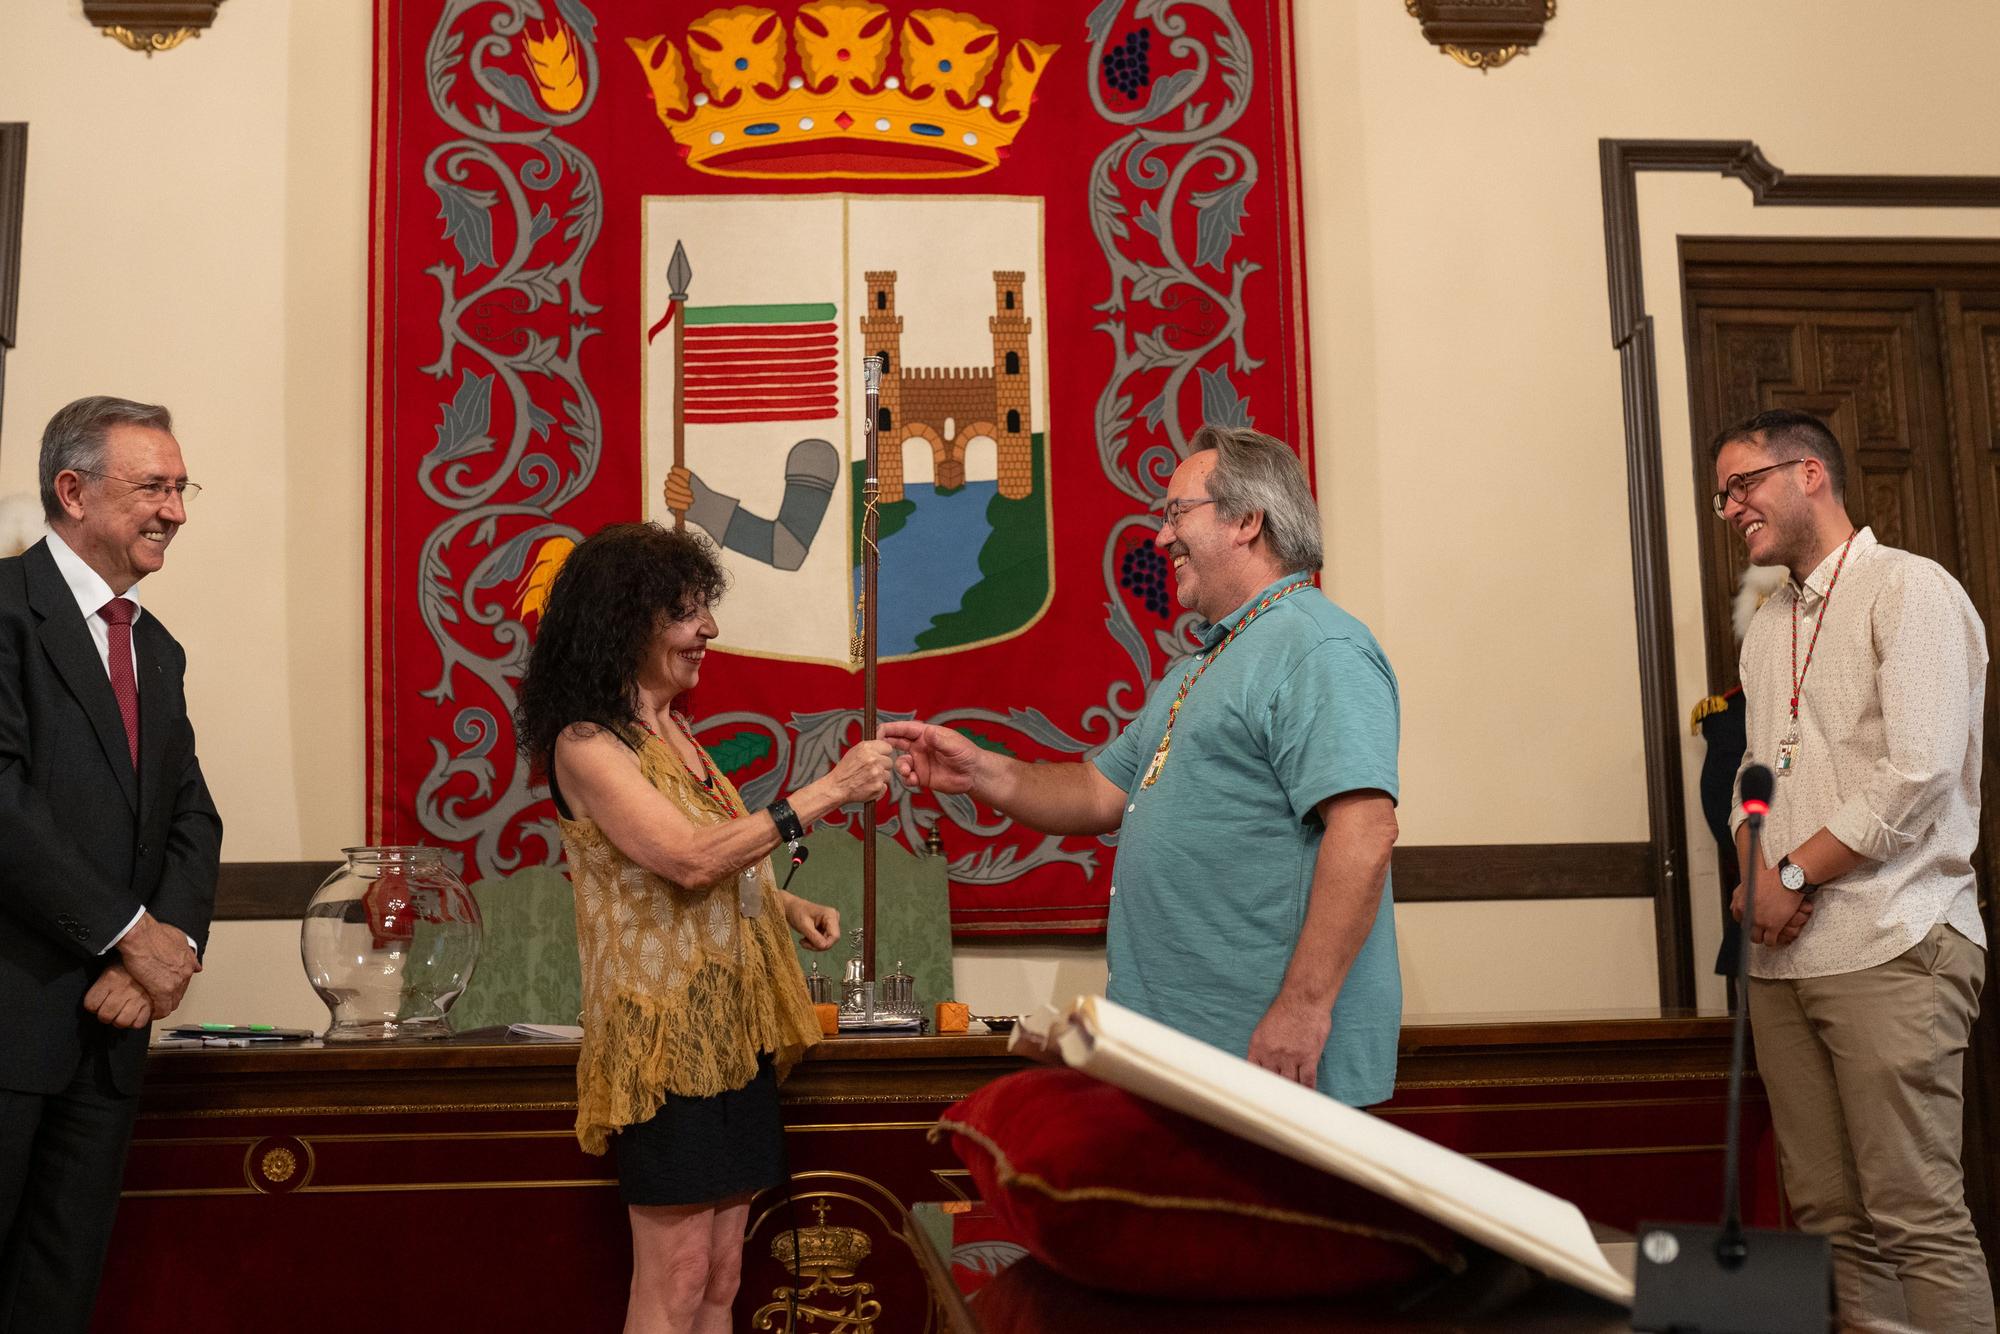 GALERÍA | Las imágenes que no habías visto del pleno de investidura en el Ayuntamiento de Zamora